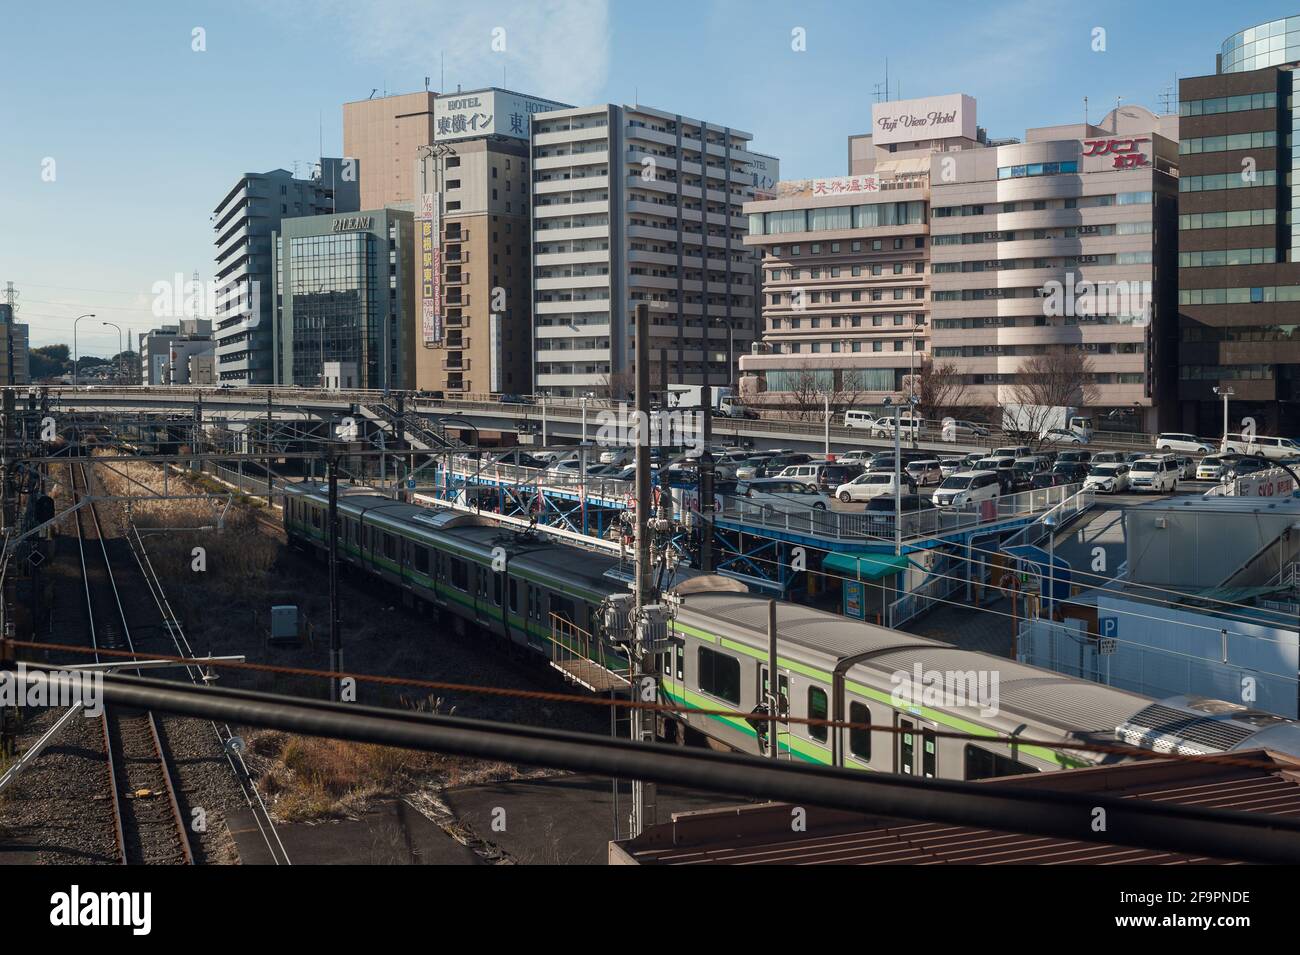 30.12.2017, Yokohama, Kanagawa, Japan - EIN Zug am Bahnhof Shin-Yokohama mit Gebäuden im Hintergrund. Yokohama liegt südlich von Tokio und ist p Stockfoto